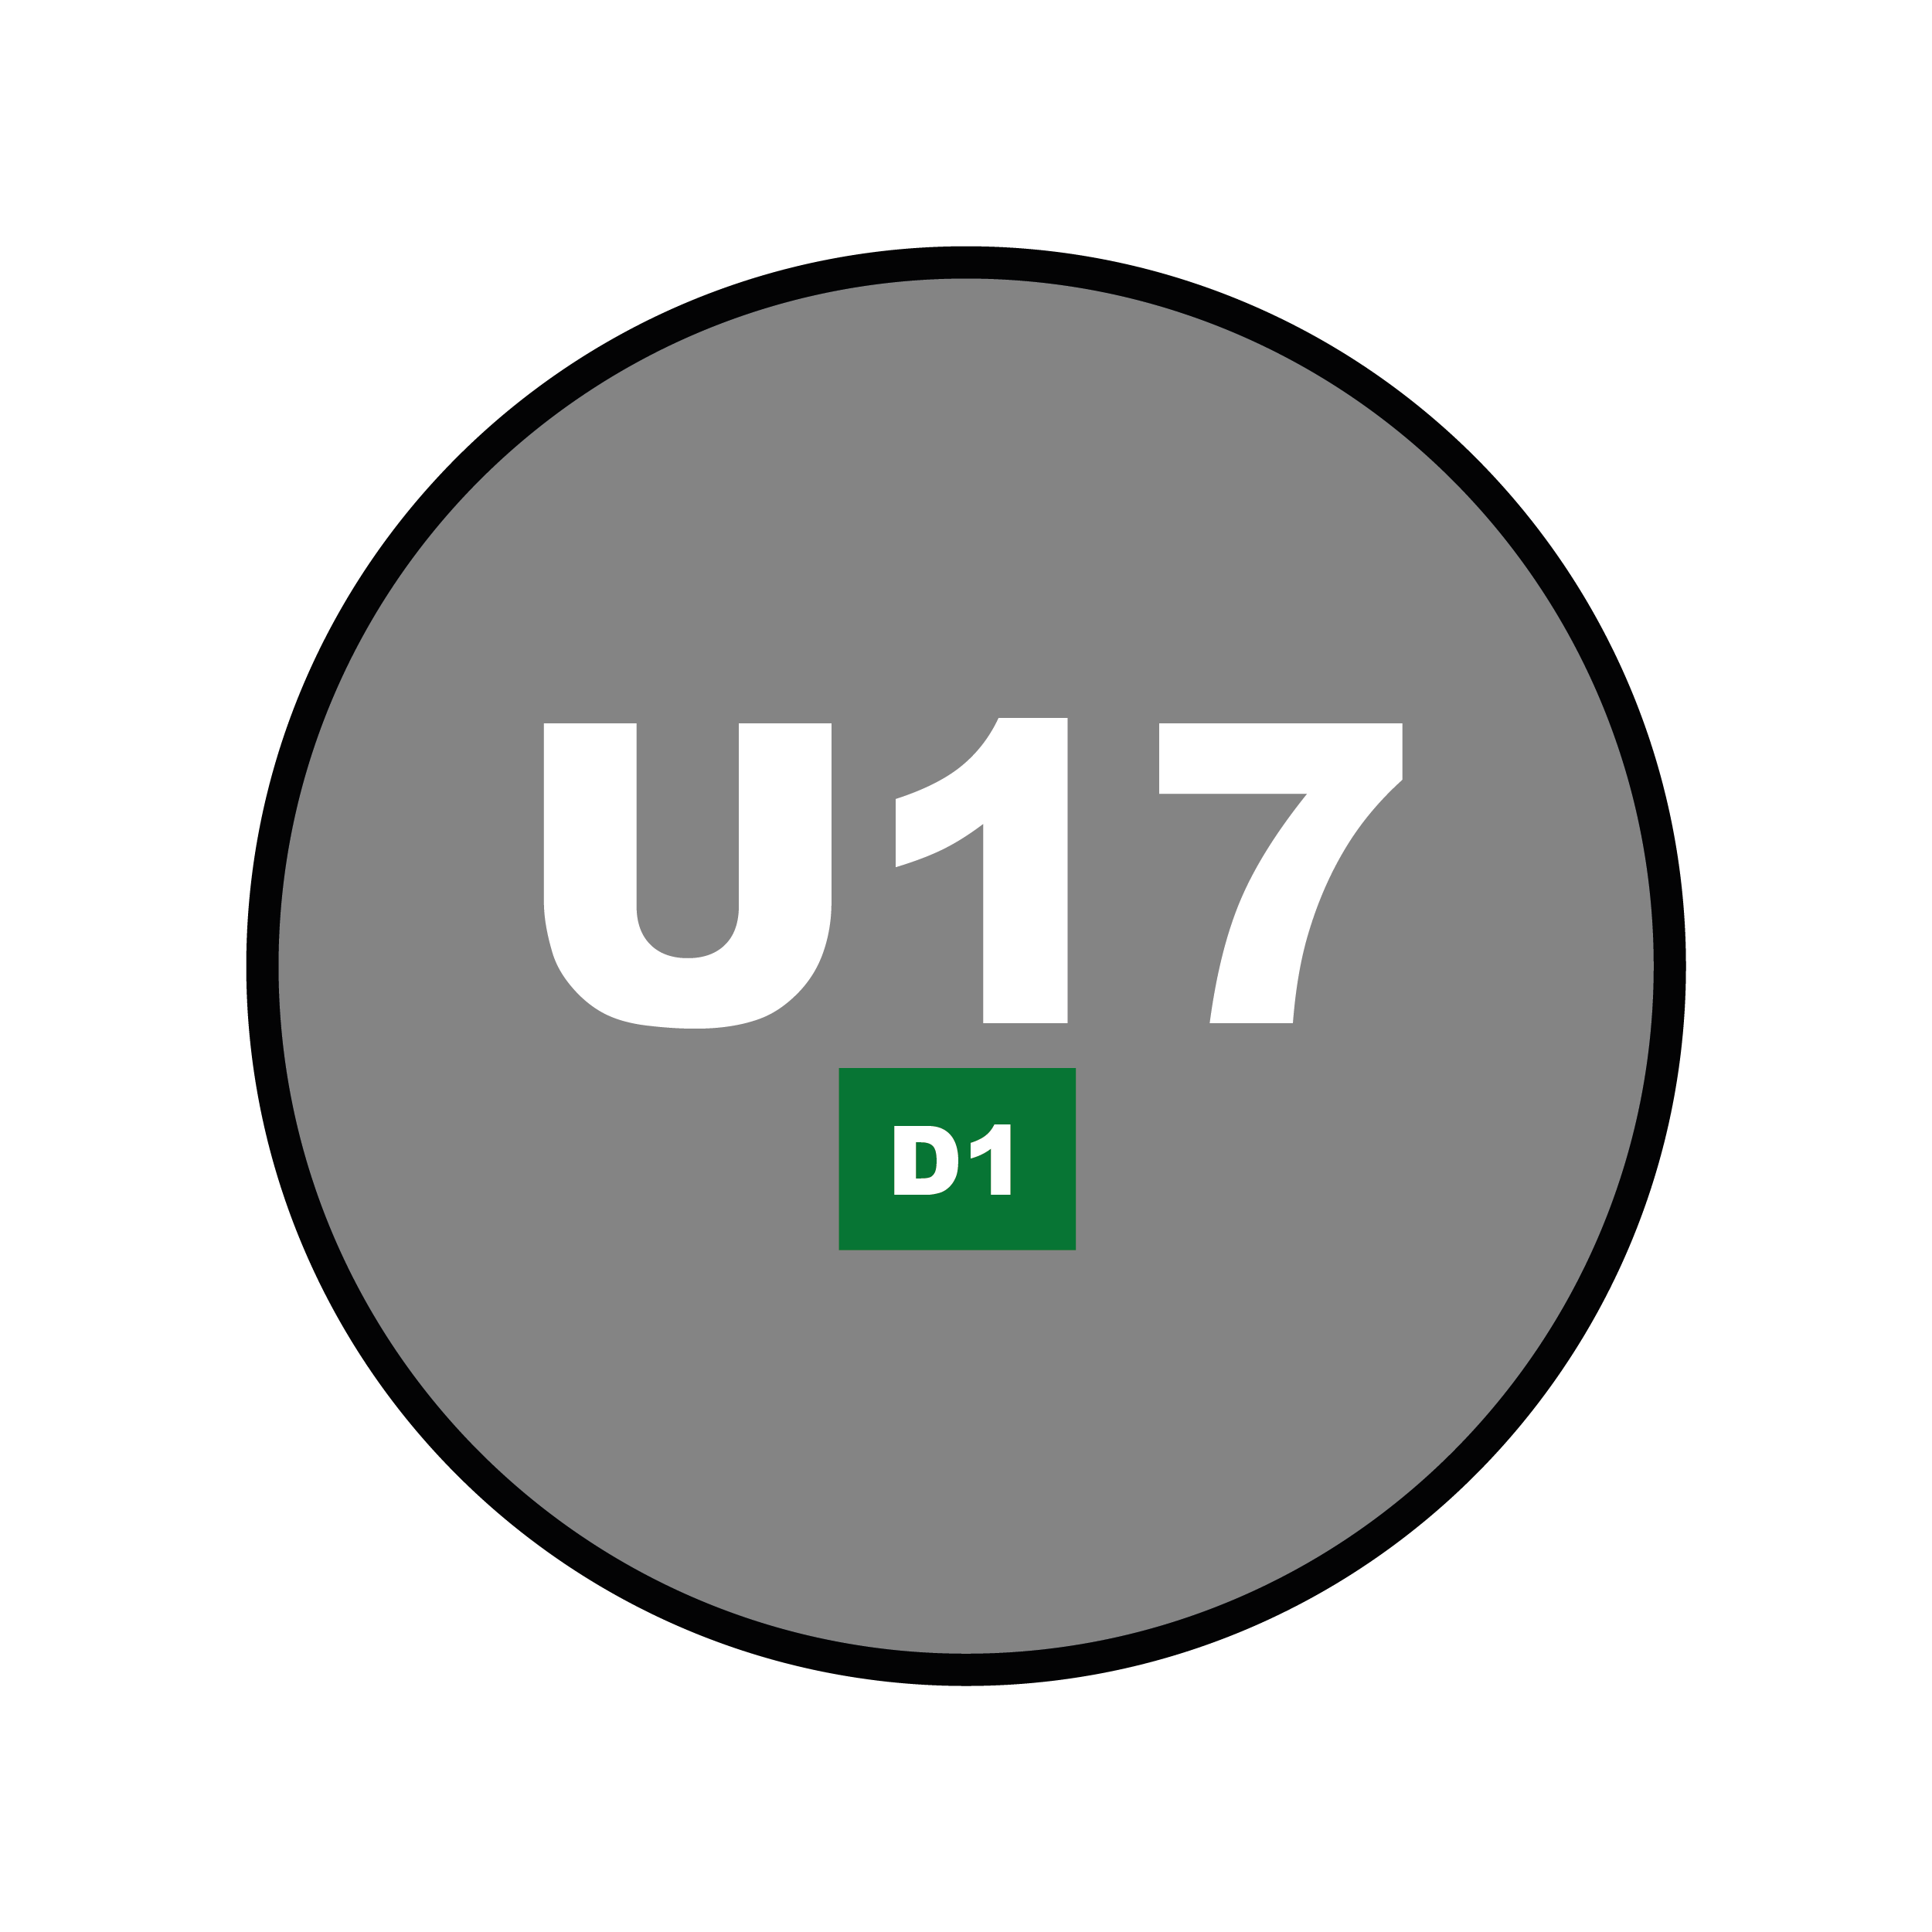 Catégorie U17 - D1